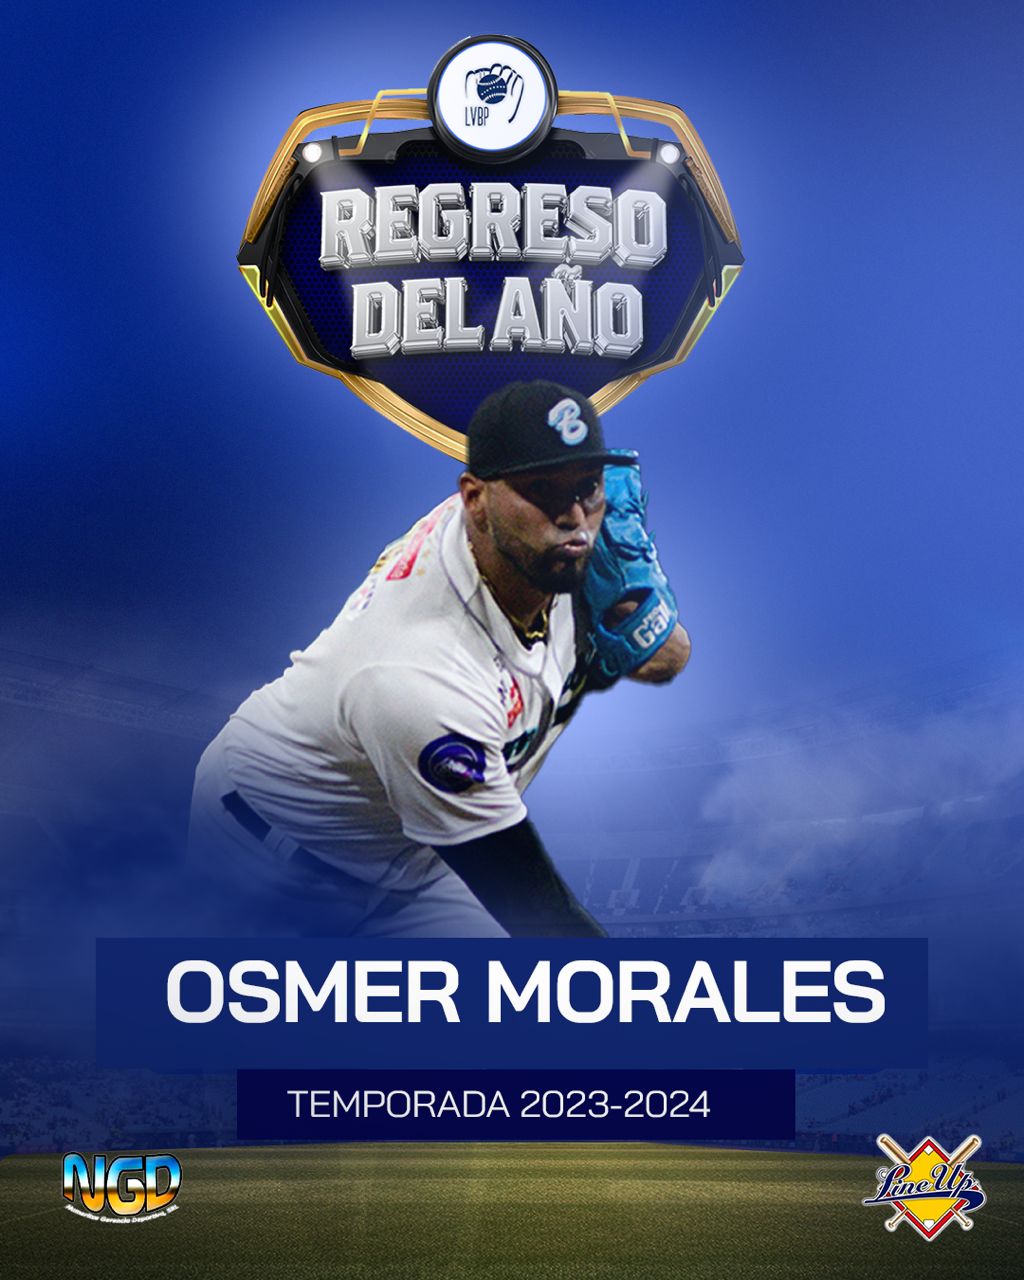 Osmer Morales gana Regreso del Año - noticiacn